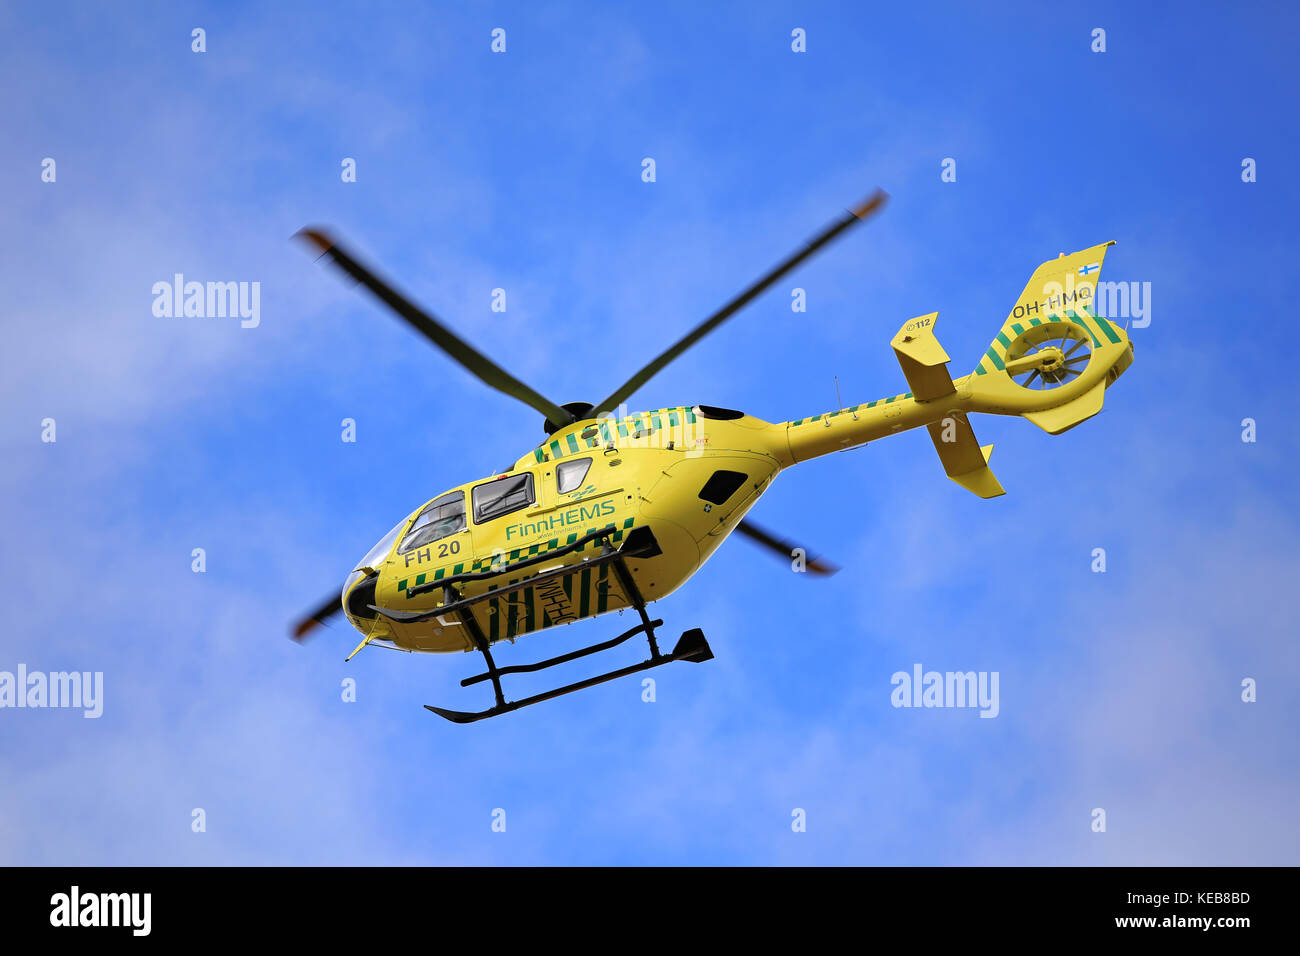 Salo, Finlandia - 27 marzo 2016: finnhems elicottero medico in volo. finnhems è una abbreviazione per elicottero finlandese il servizio medico di emergenza. Foto Stock